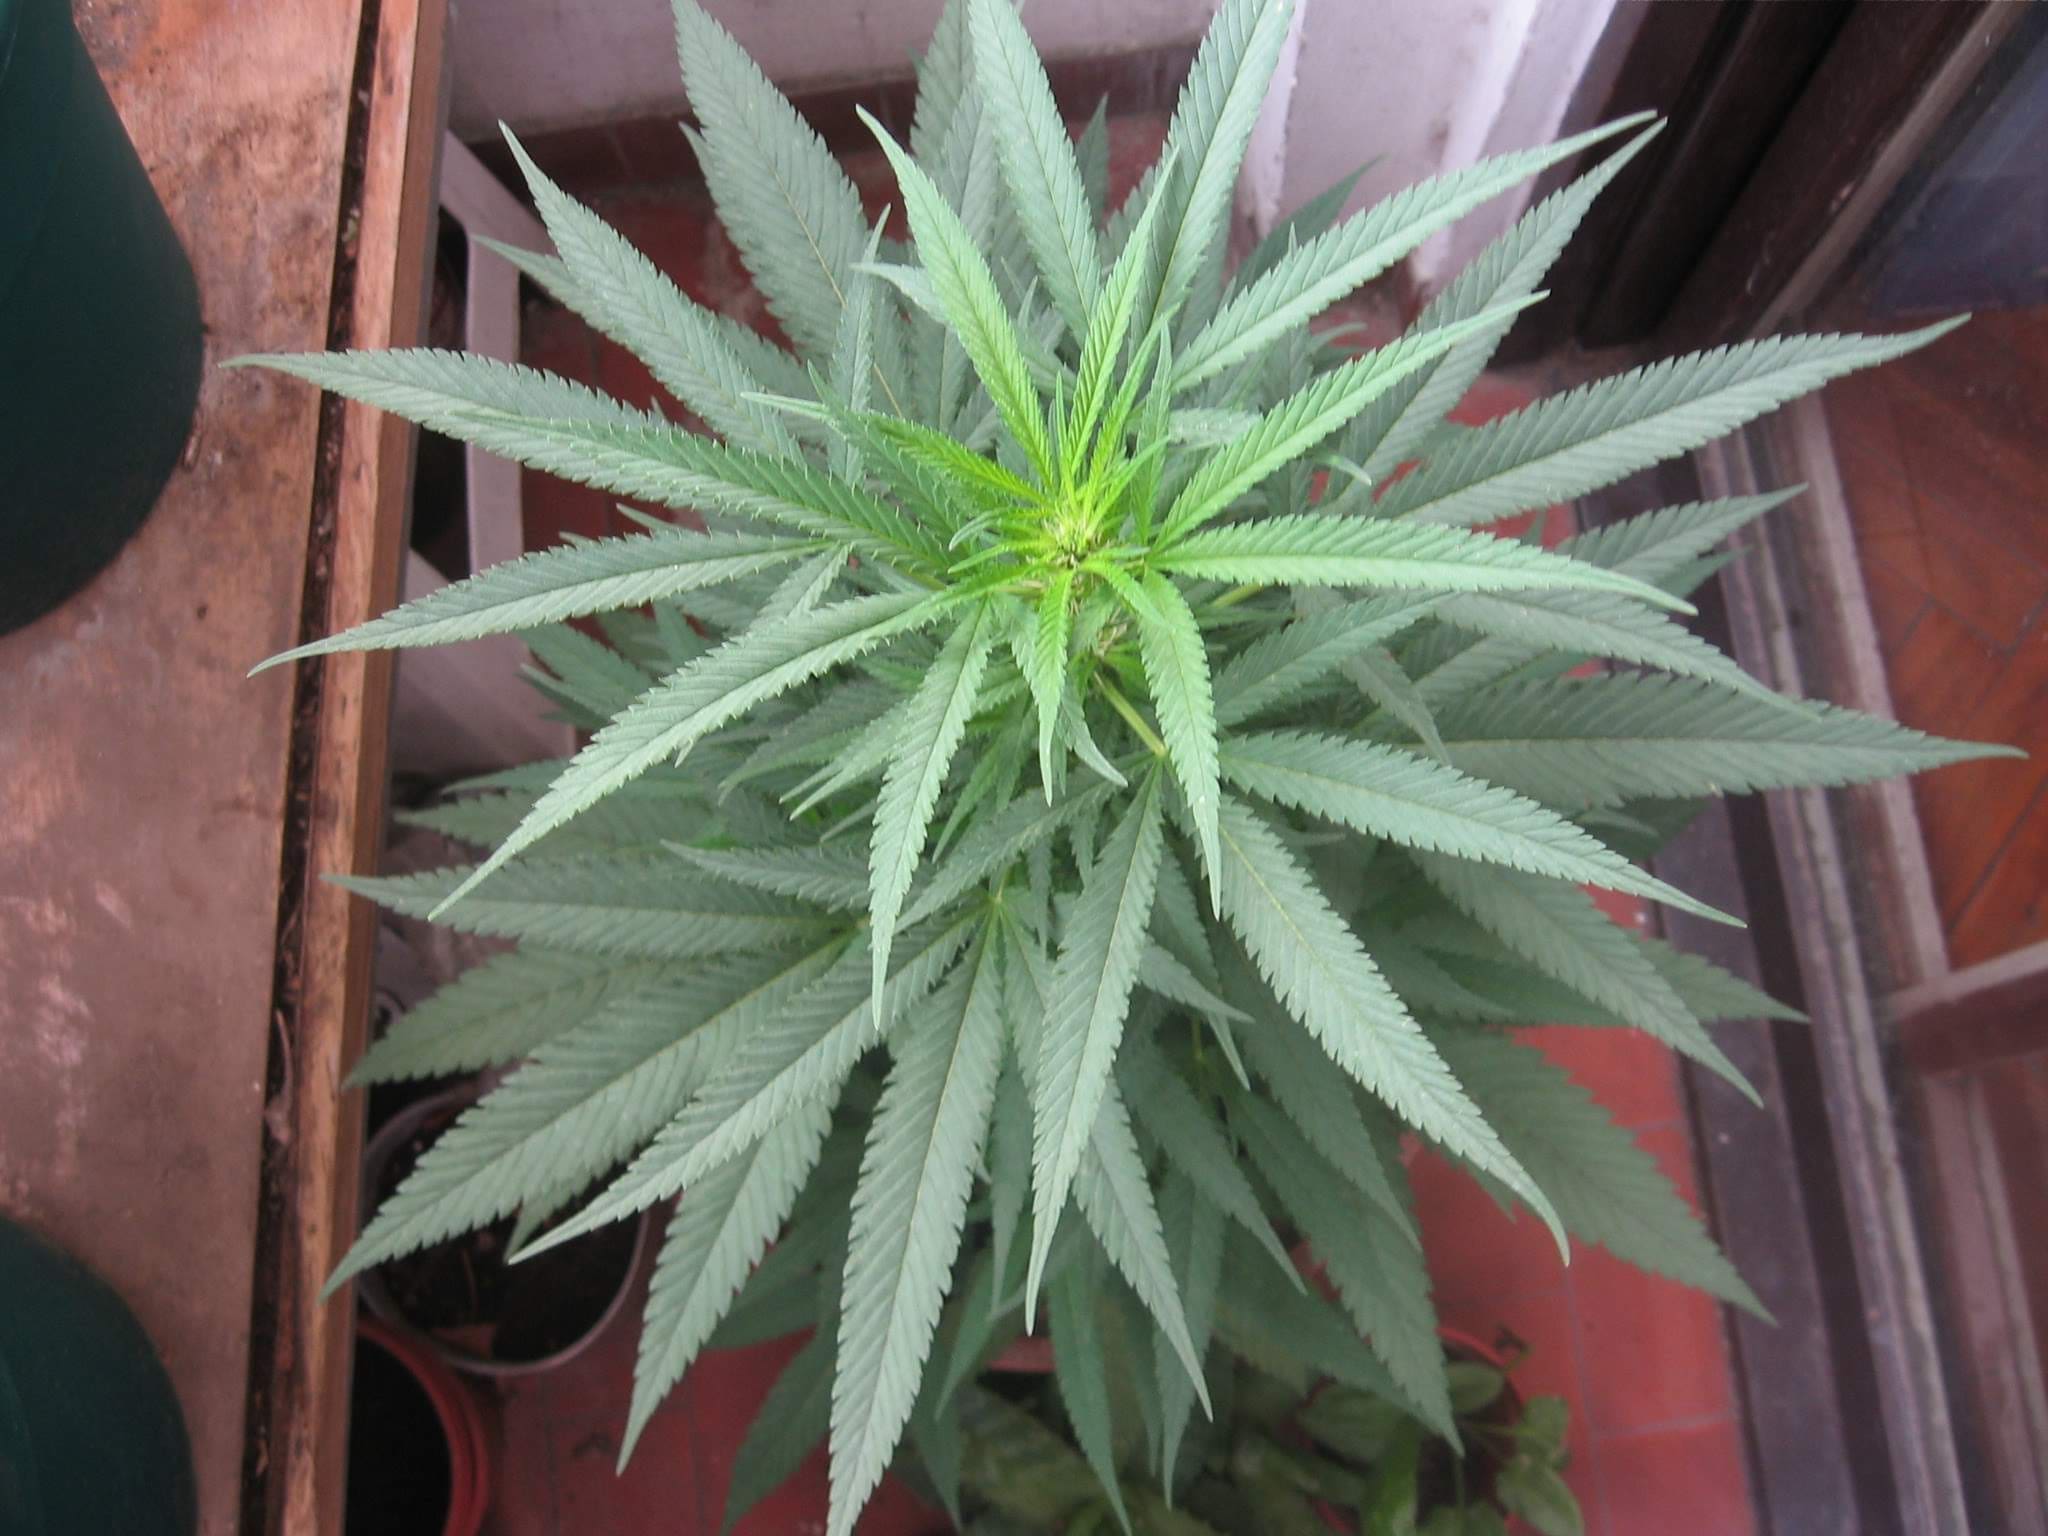 Cannabis in vegetative stage - week 8